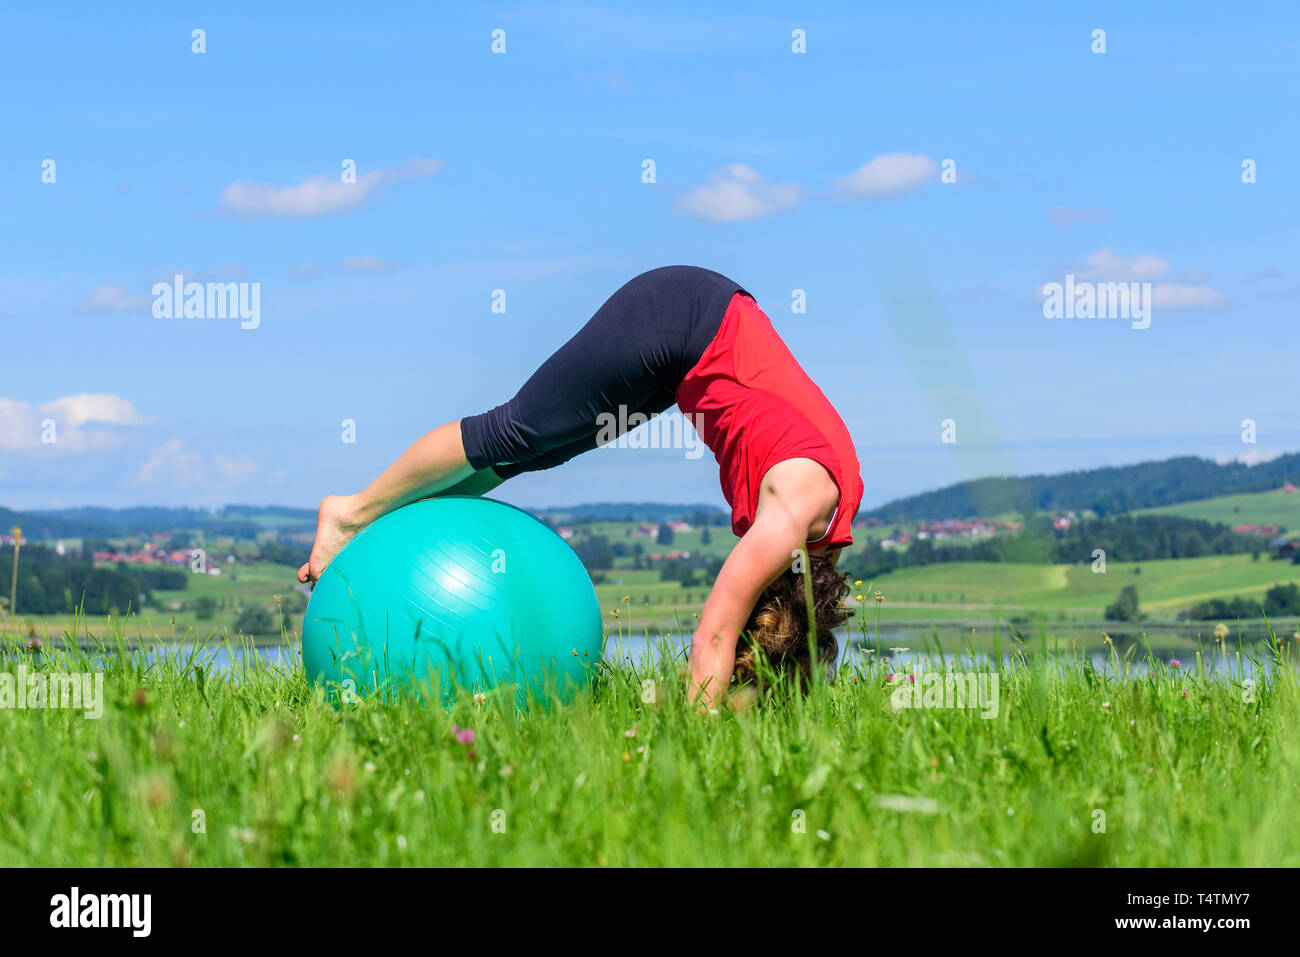 Femme avec ballon de gymnastique pilates Banque D'Images